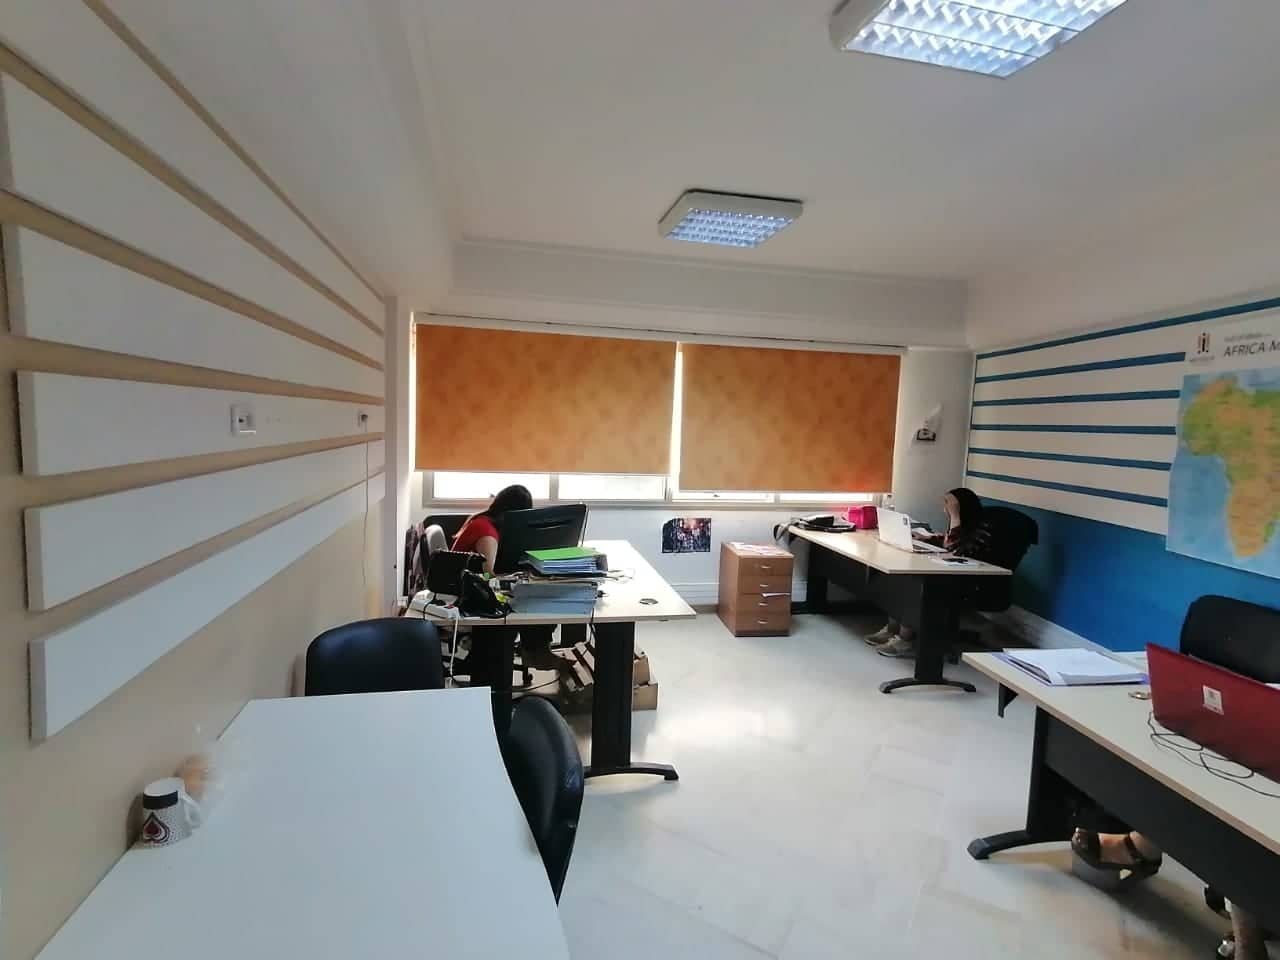 Bab Bhar Bab Bhar Bureaux & Commerces Bureau Super bureau 650m2 au centre de tunis